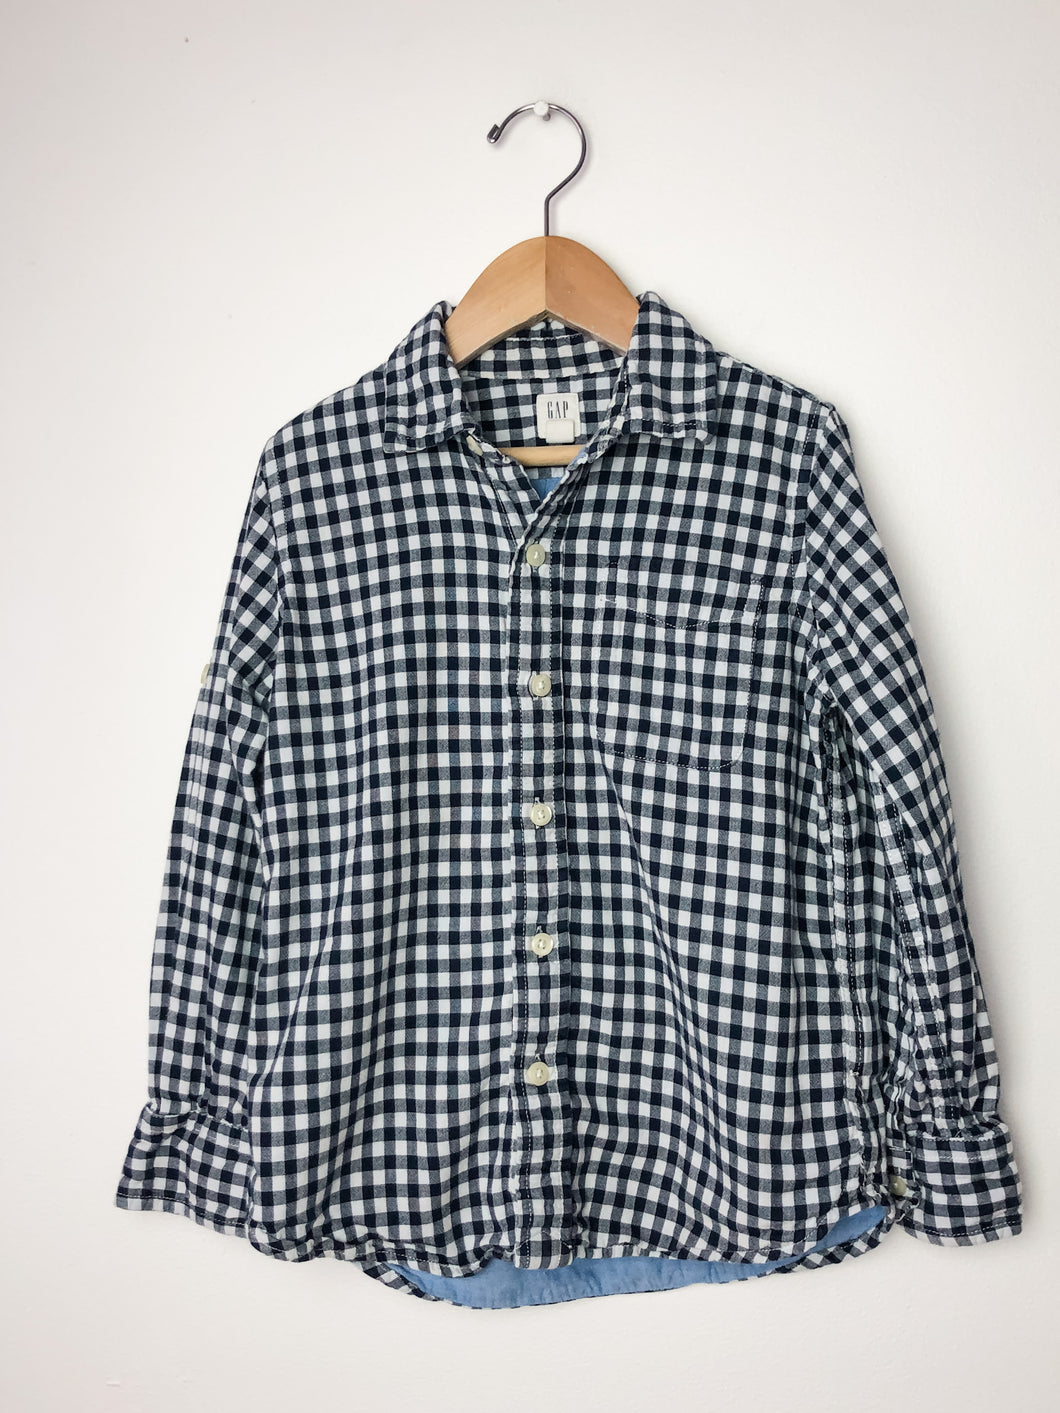 Plaid Gap Shirt Size 6-7